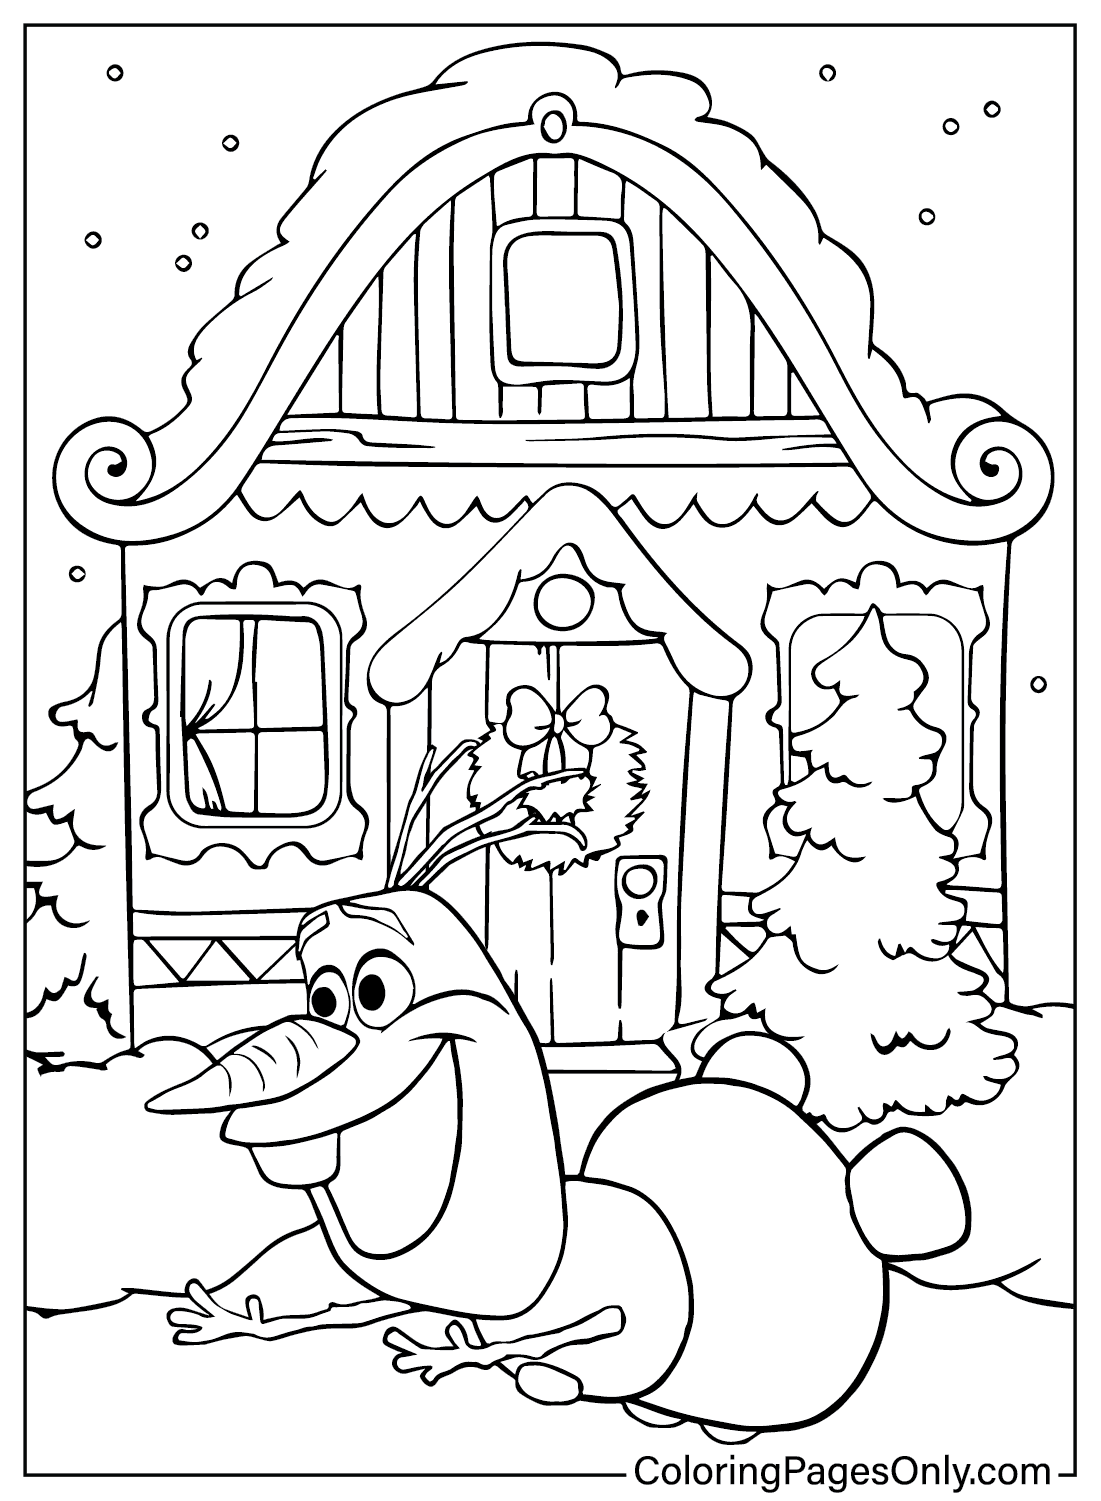 Раскраска Снеговик и пряничный домик из мультфильма Снеговик